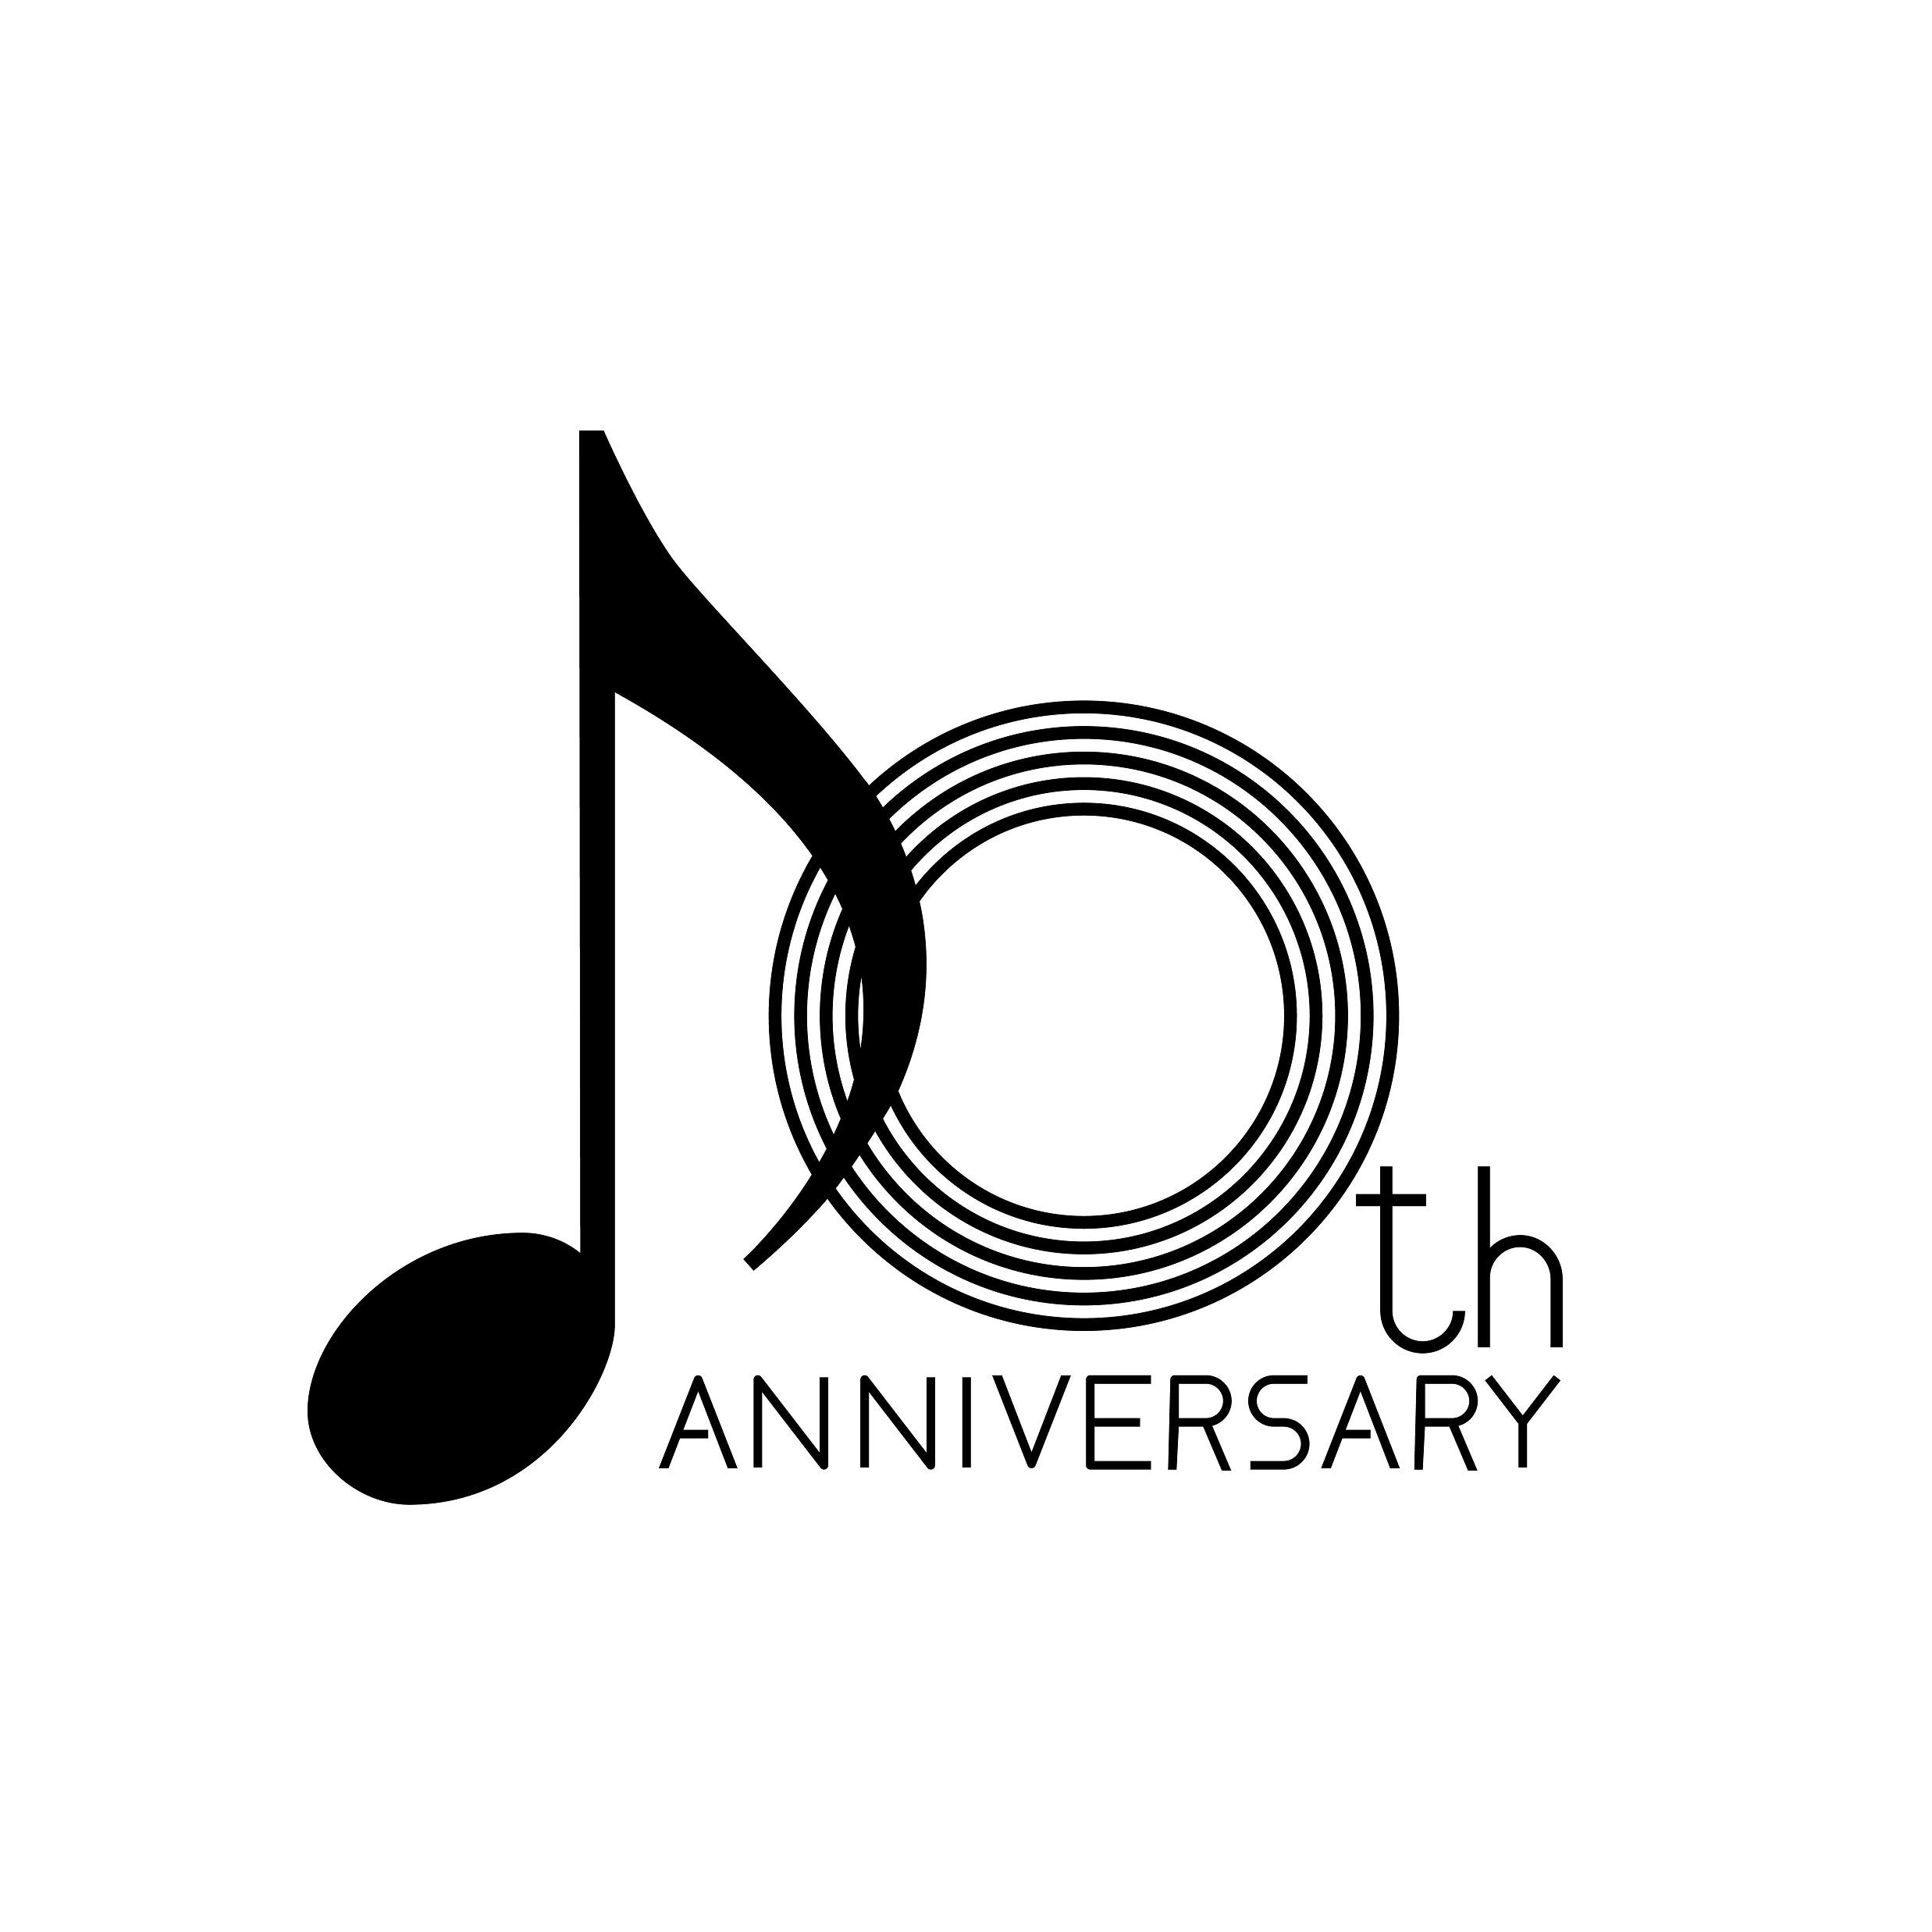 小金井市宮地楽器ホール10周年記念ロゴにグラフィックデザイン科学生の作品が採用されました！